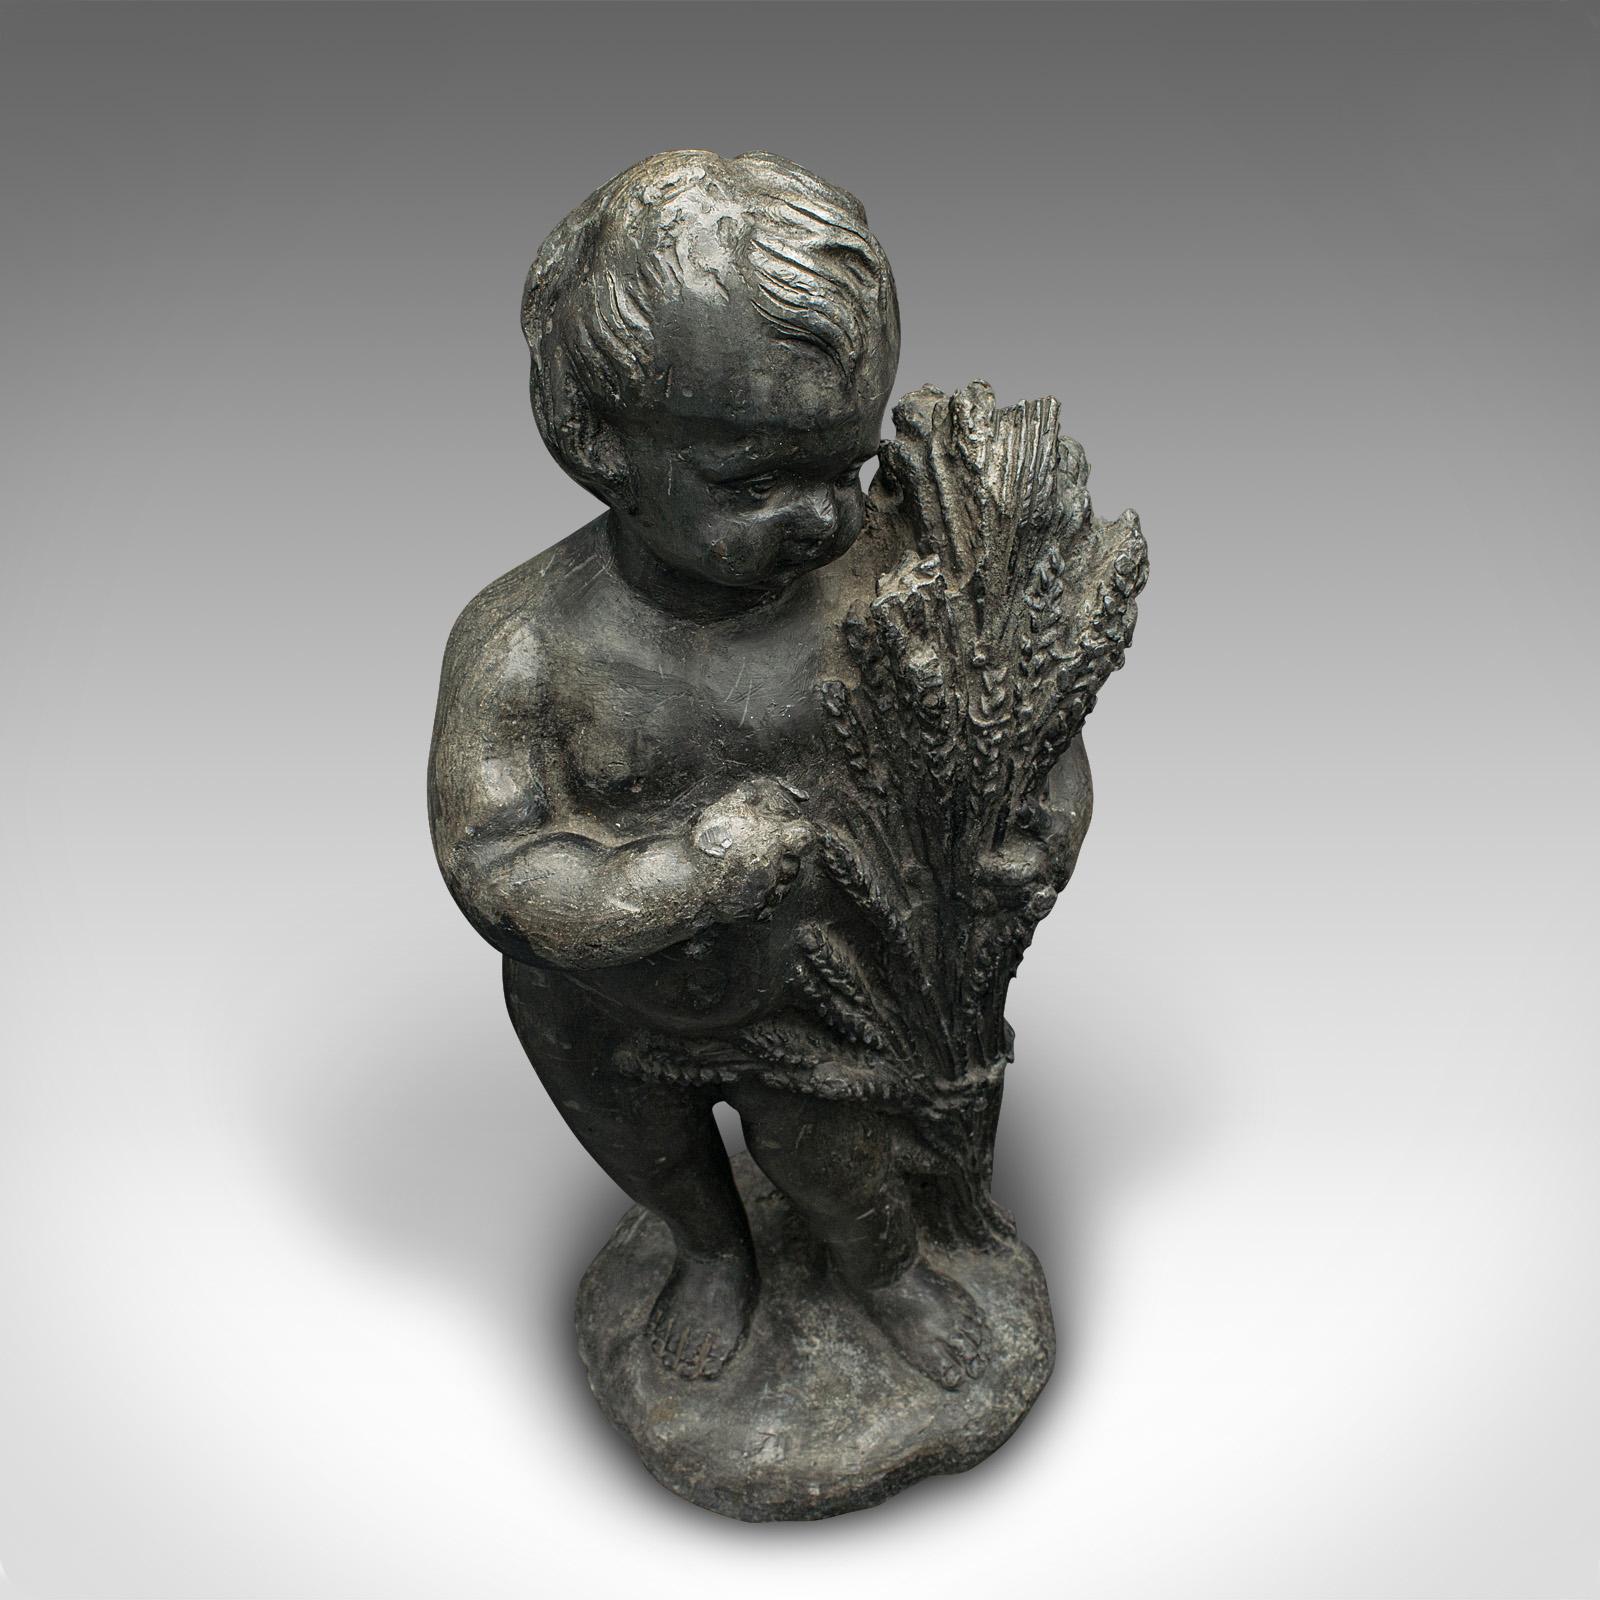 Heavy Antique Putto Figure, Italian, Lead Cherub Statue, Neoclassical, Victorian For Sale 2